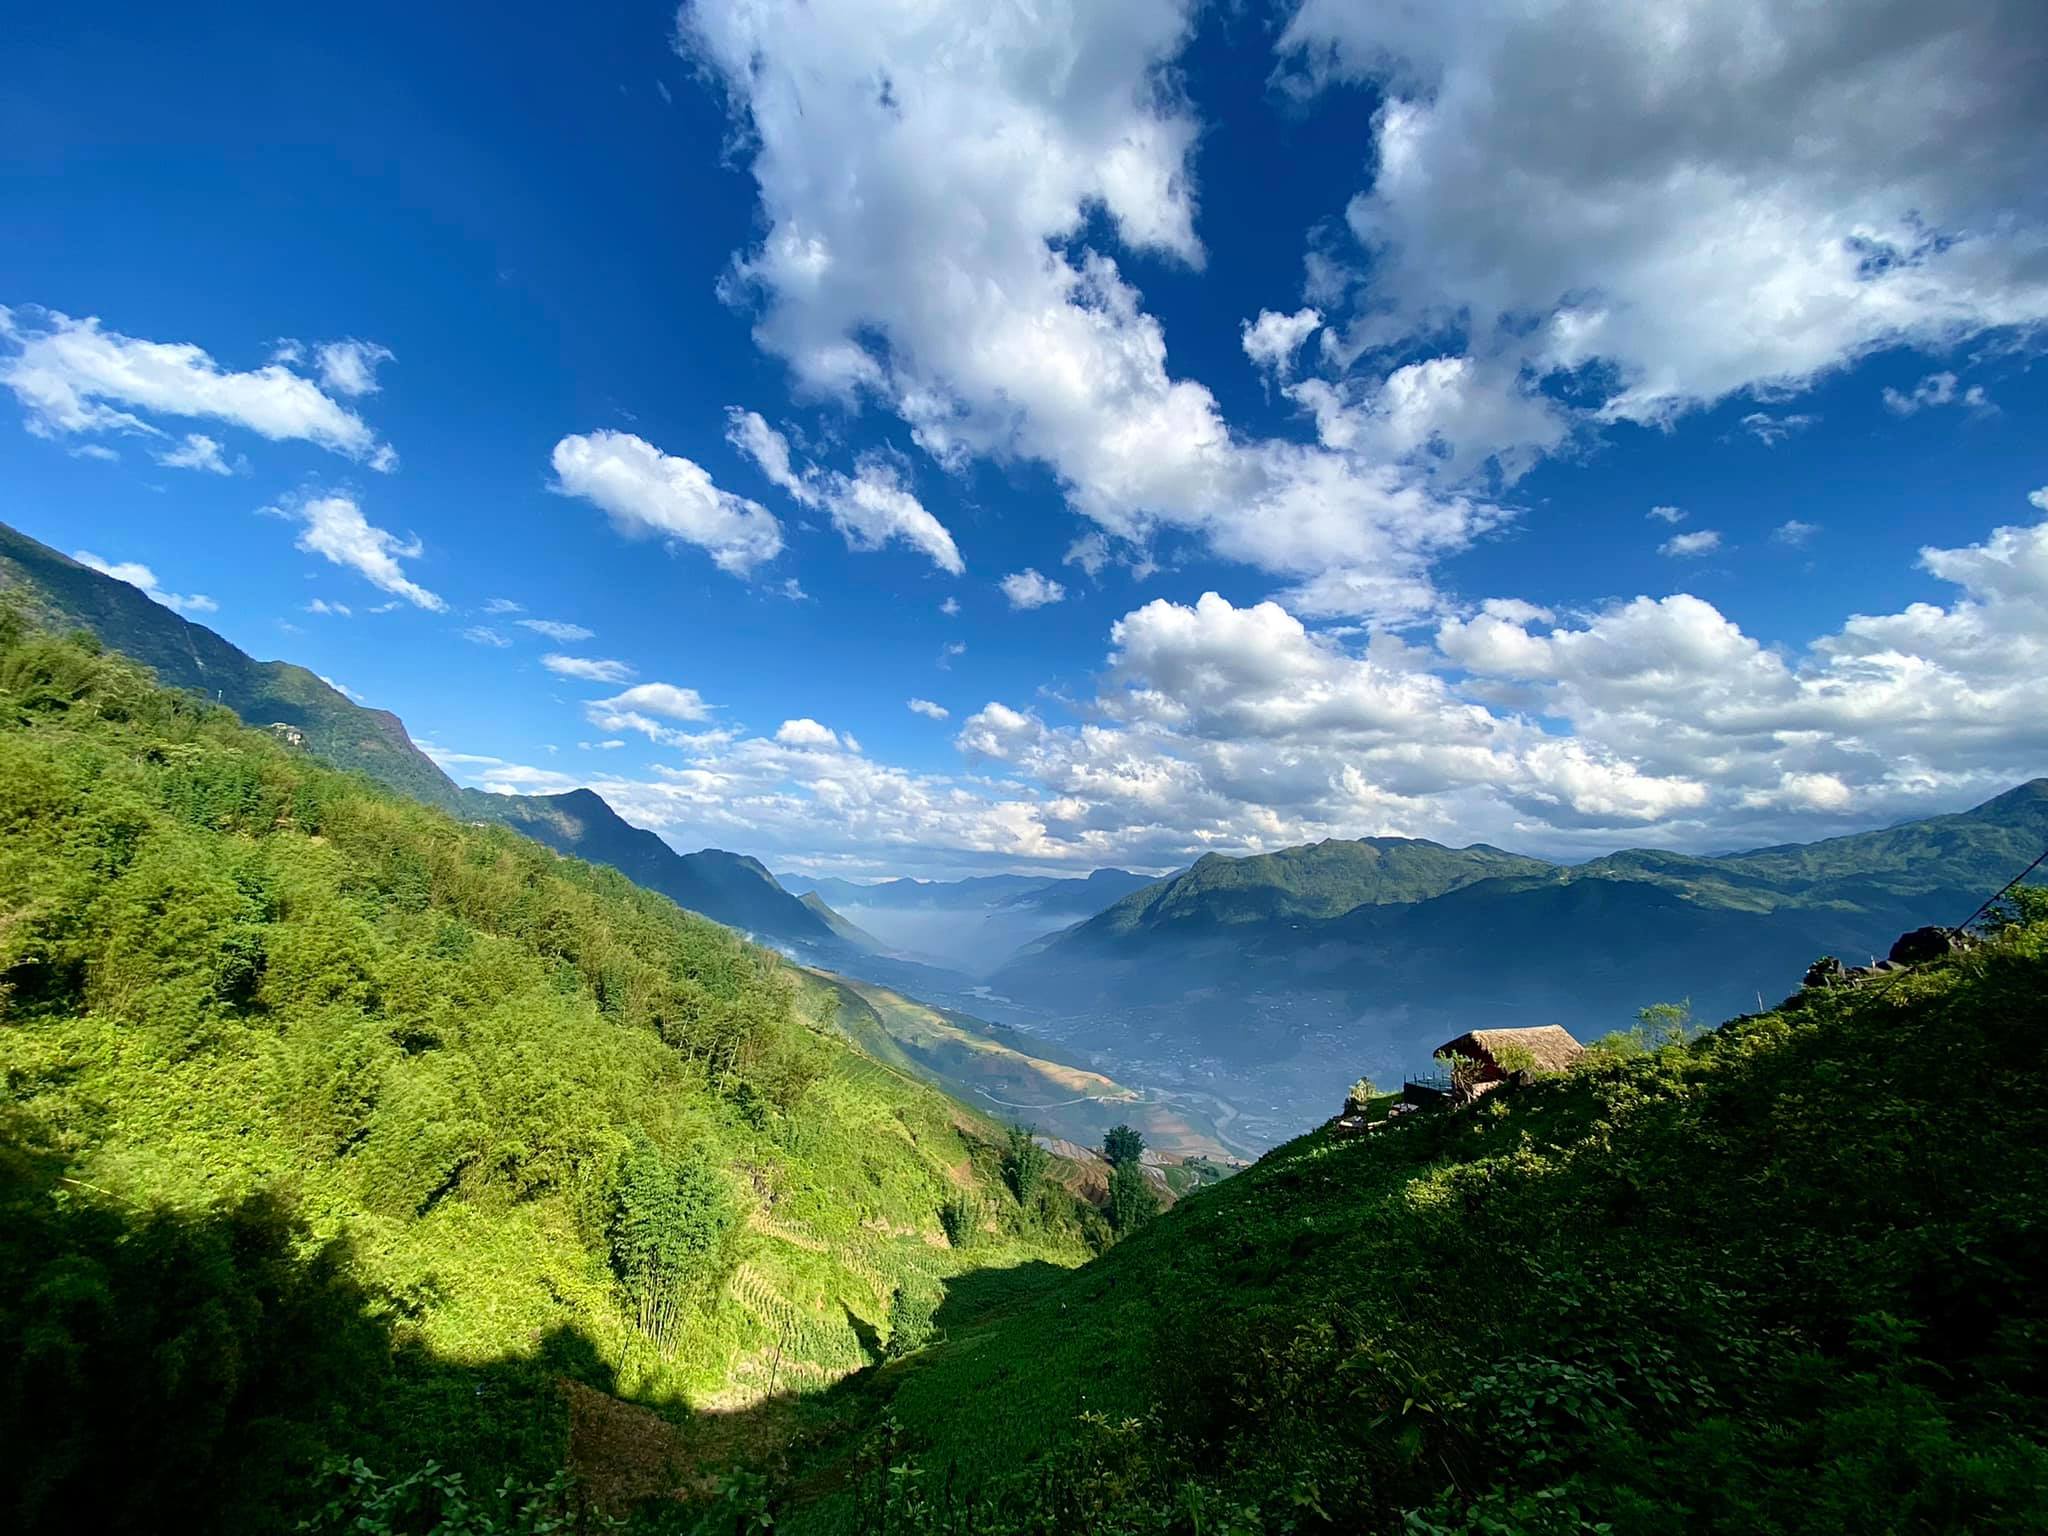 Sapa: Sapa - thiên đường mây trắng của Việt Nam! Hãy ngắm nhìn những mảng mây quanh năm đọng lại trên những ngọn núi cao, đồng ruộng bậc thang và những ngôi nhà sàn đặc trưng của vùng Tây Bắc. Ảnh về Sapa chắc chắn sẽ mang lại cho bạn cảm giác bình yên và ngắm nhìn thiên nhiên tươi đẹp.